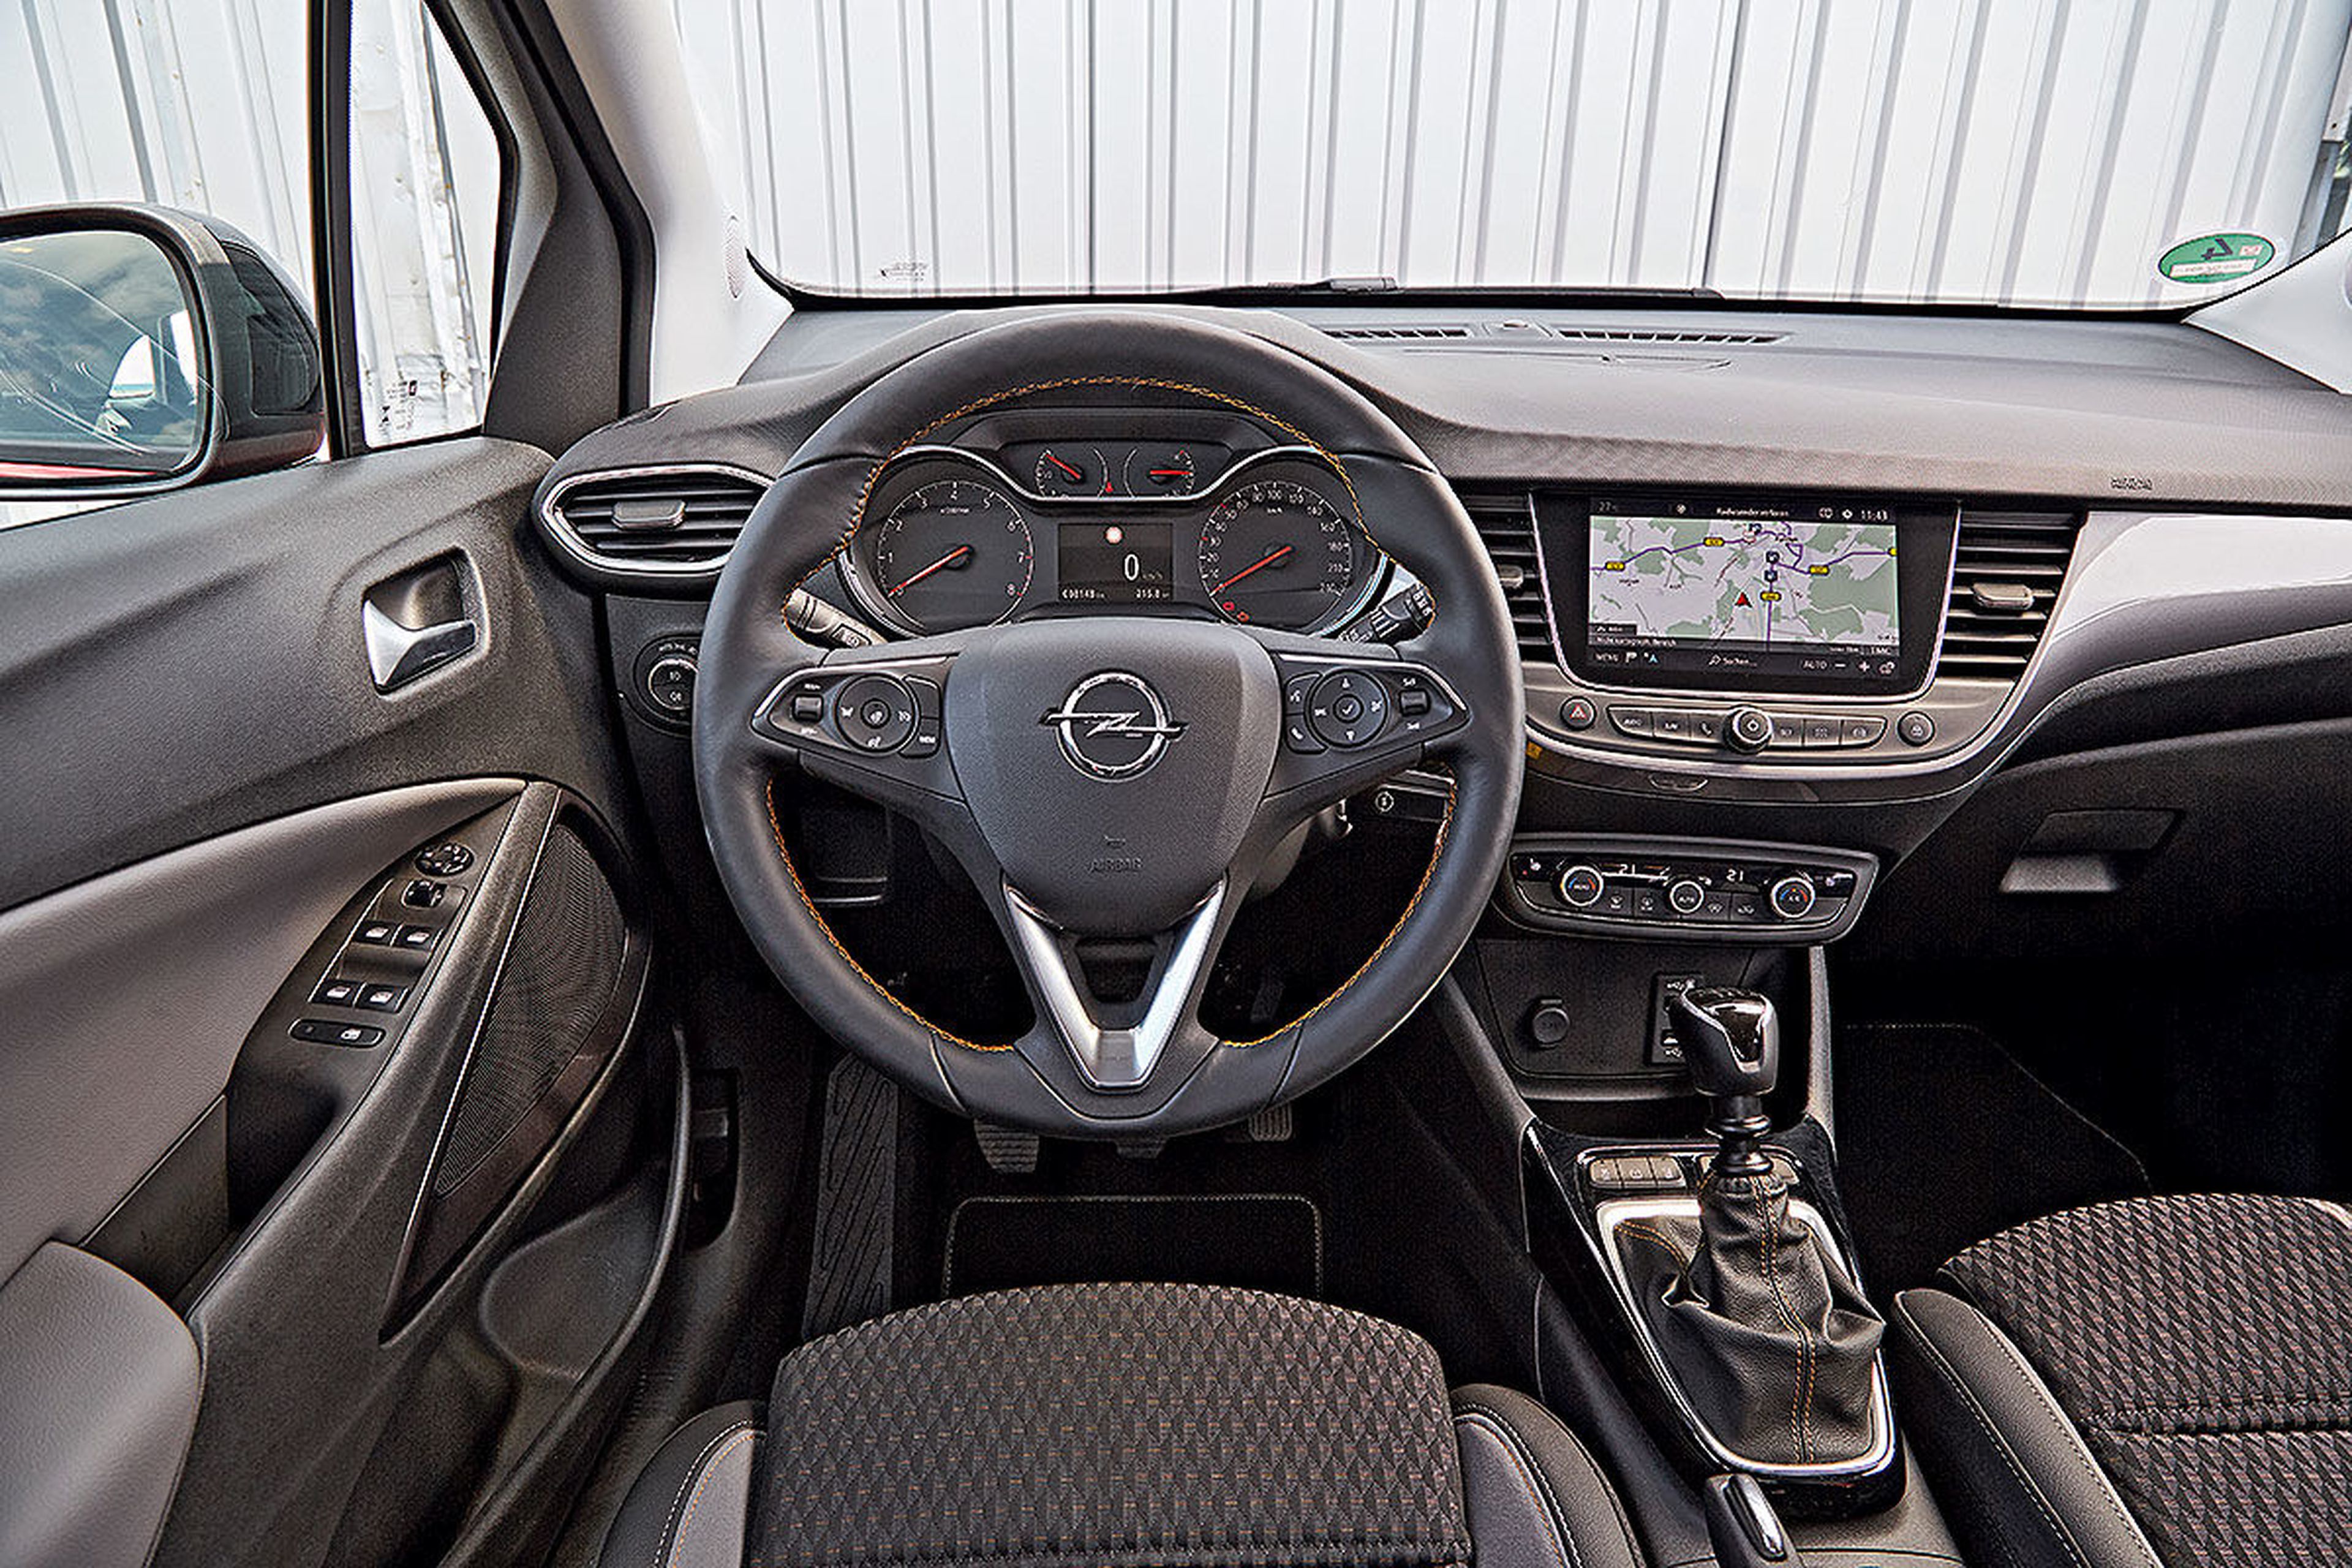 Un interior sólido y con materiales de calidad en el Opel. Pero la pantalla va más baja de lo que nos gustaría